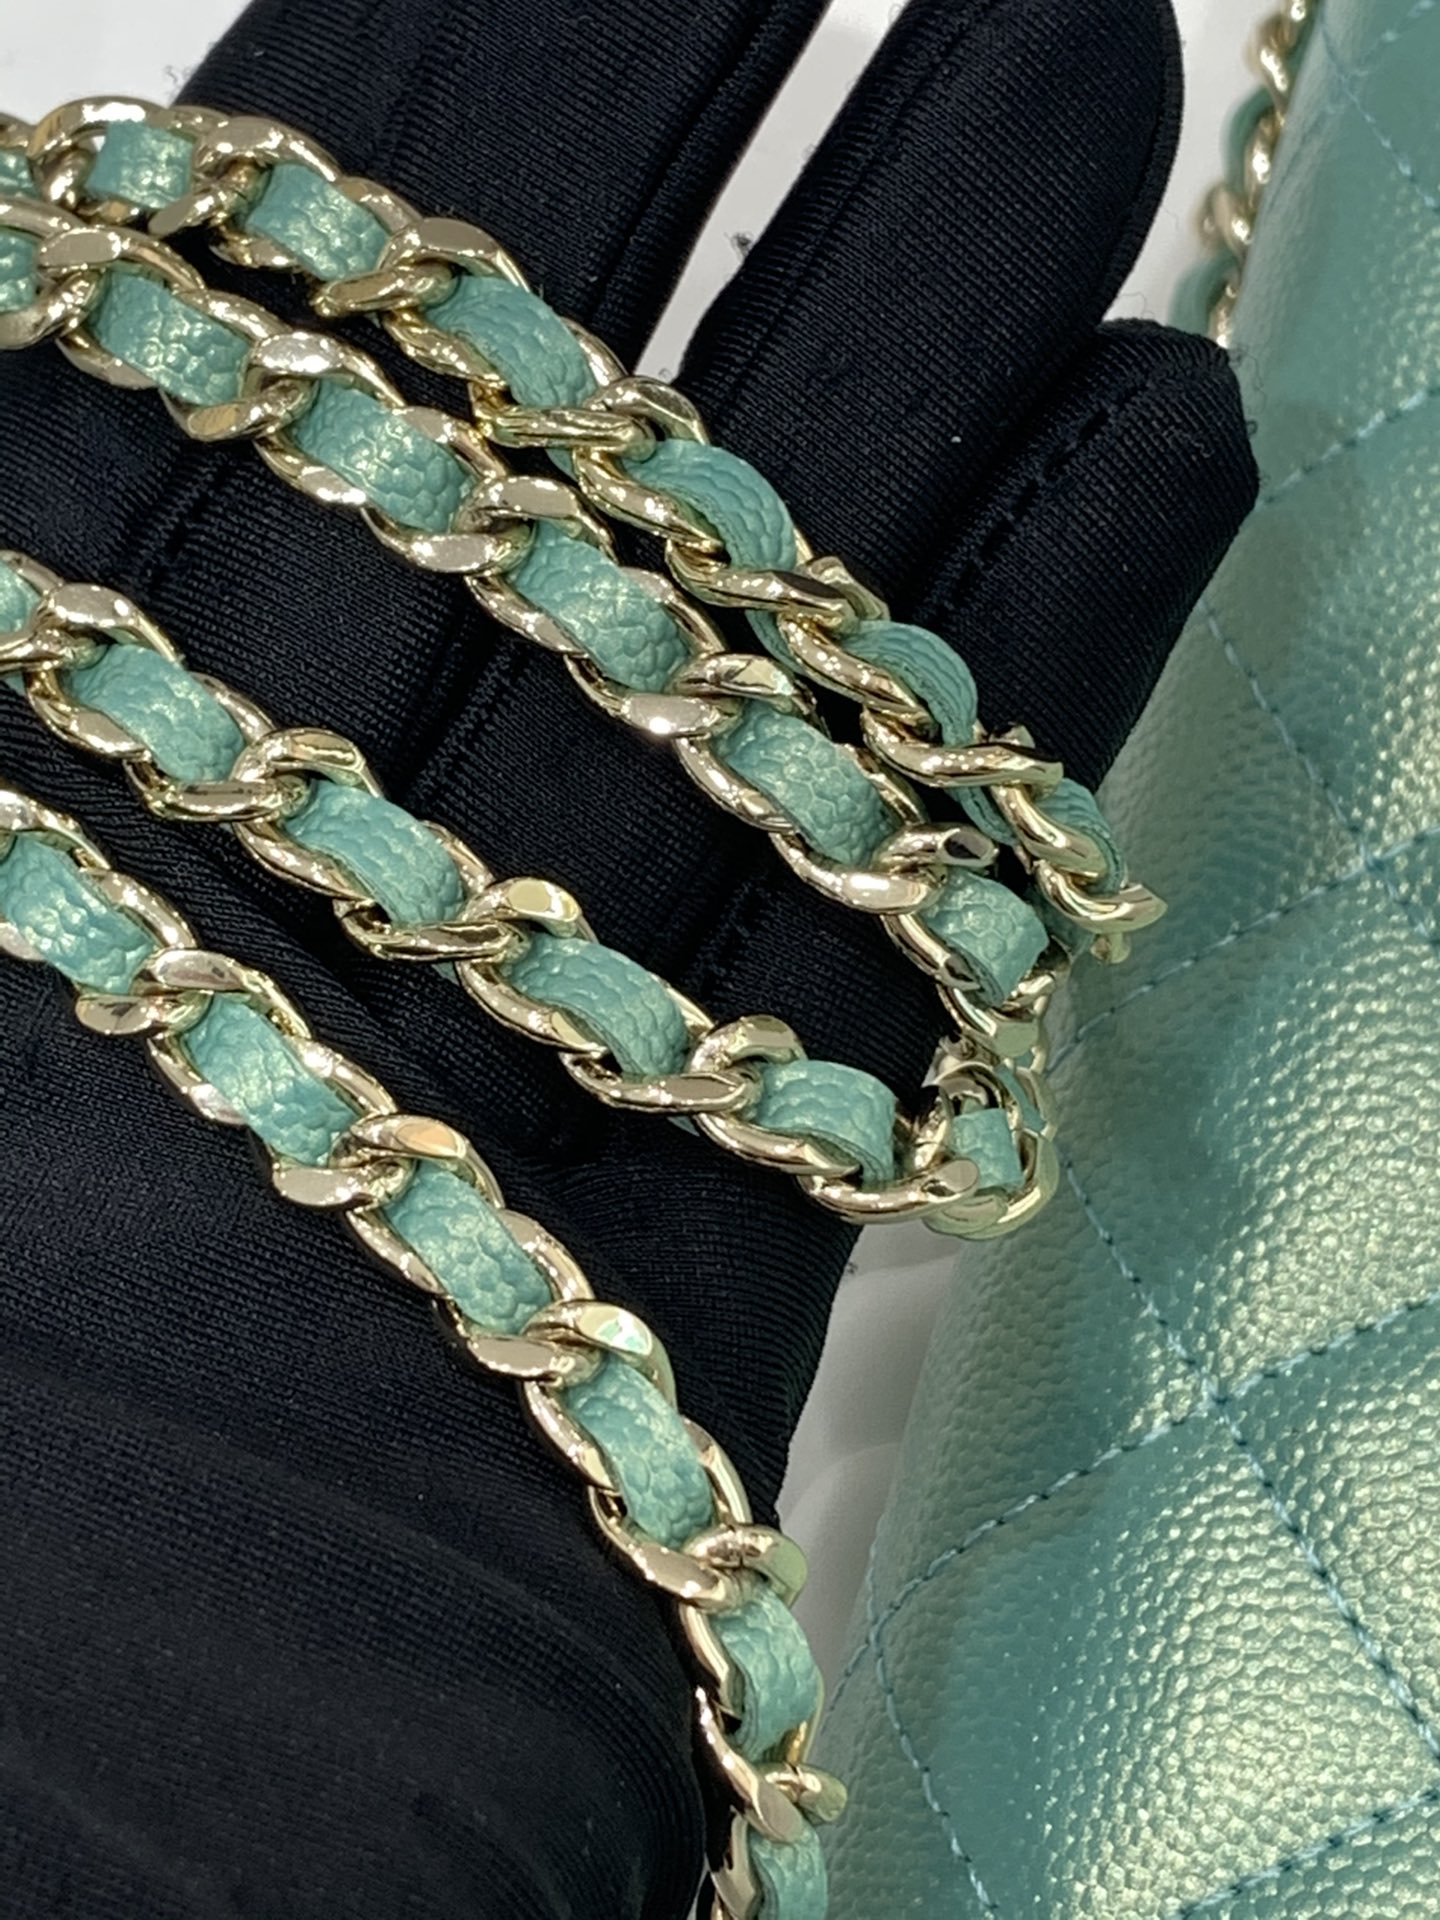 【按扣版】Chanel WOC链条包 新款变色woc 珠光皮 不同光线变换出炫彩 19.5-13-3.5cm